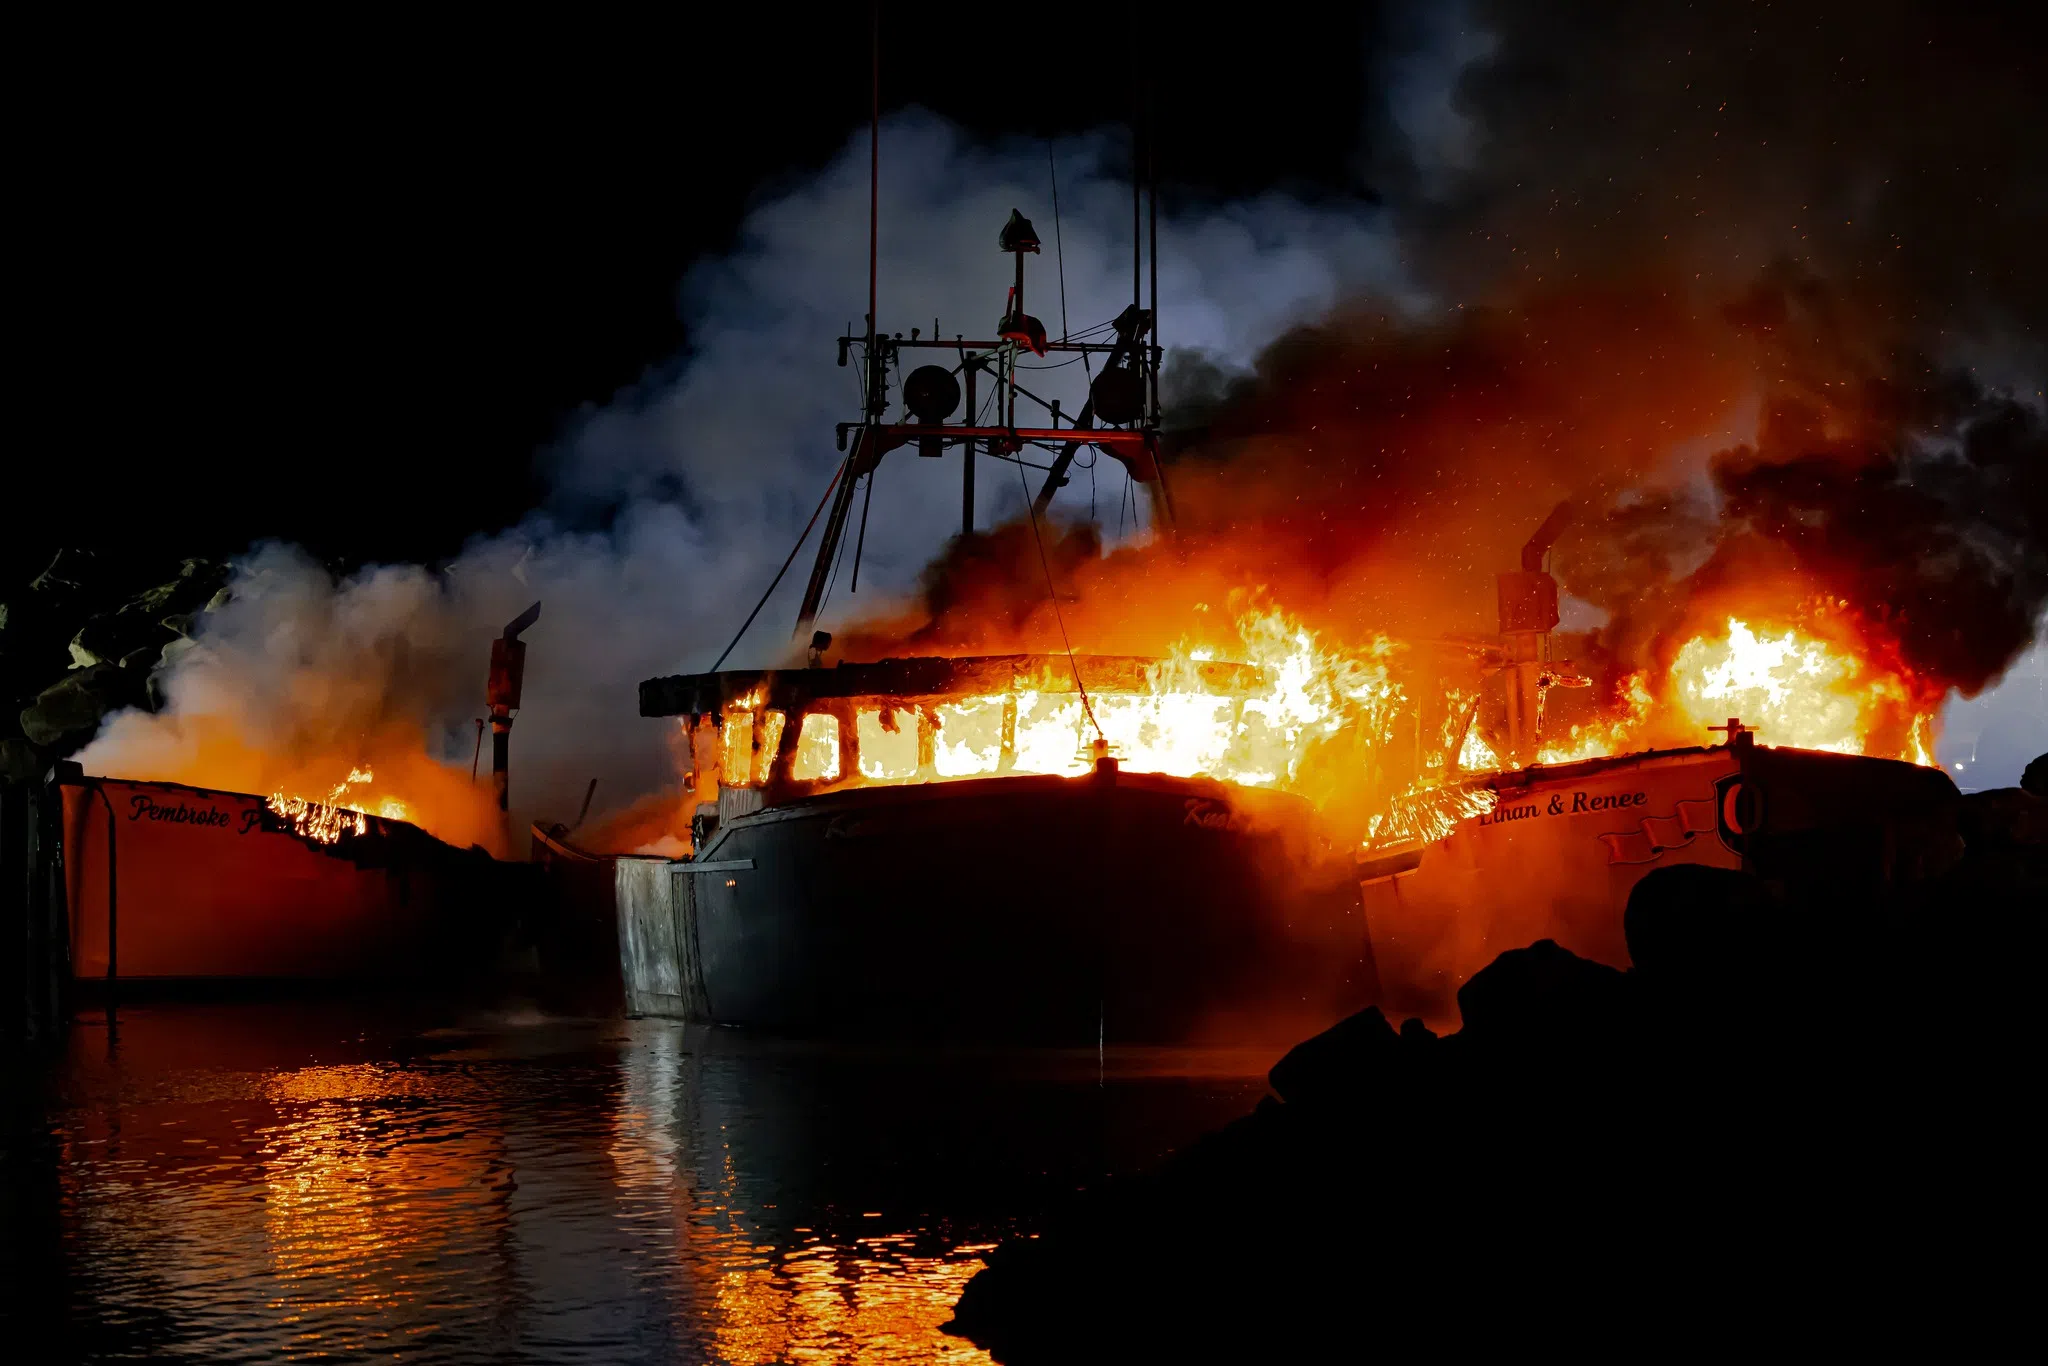 Fire destroys 3 lobster boats on Pembroke wharf